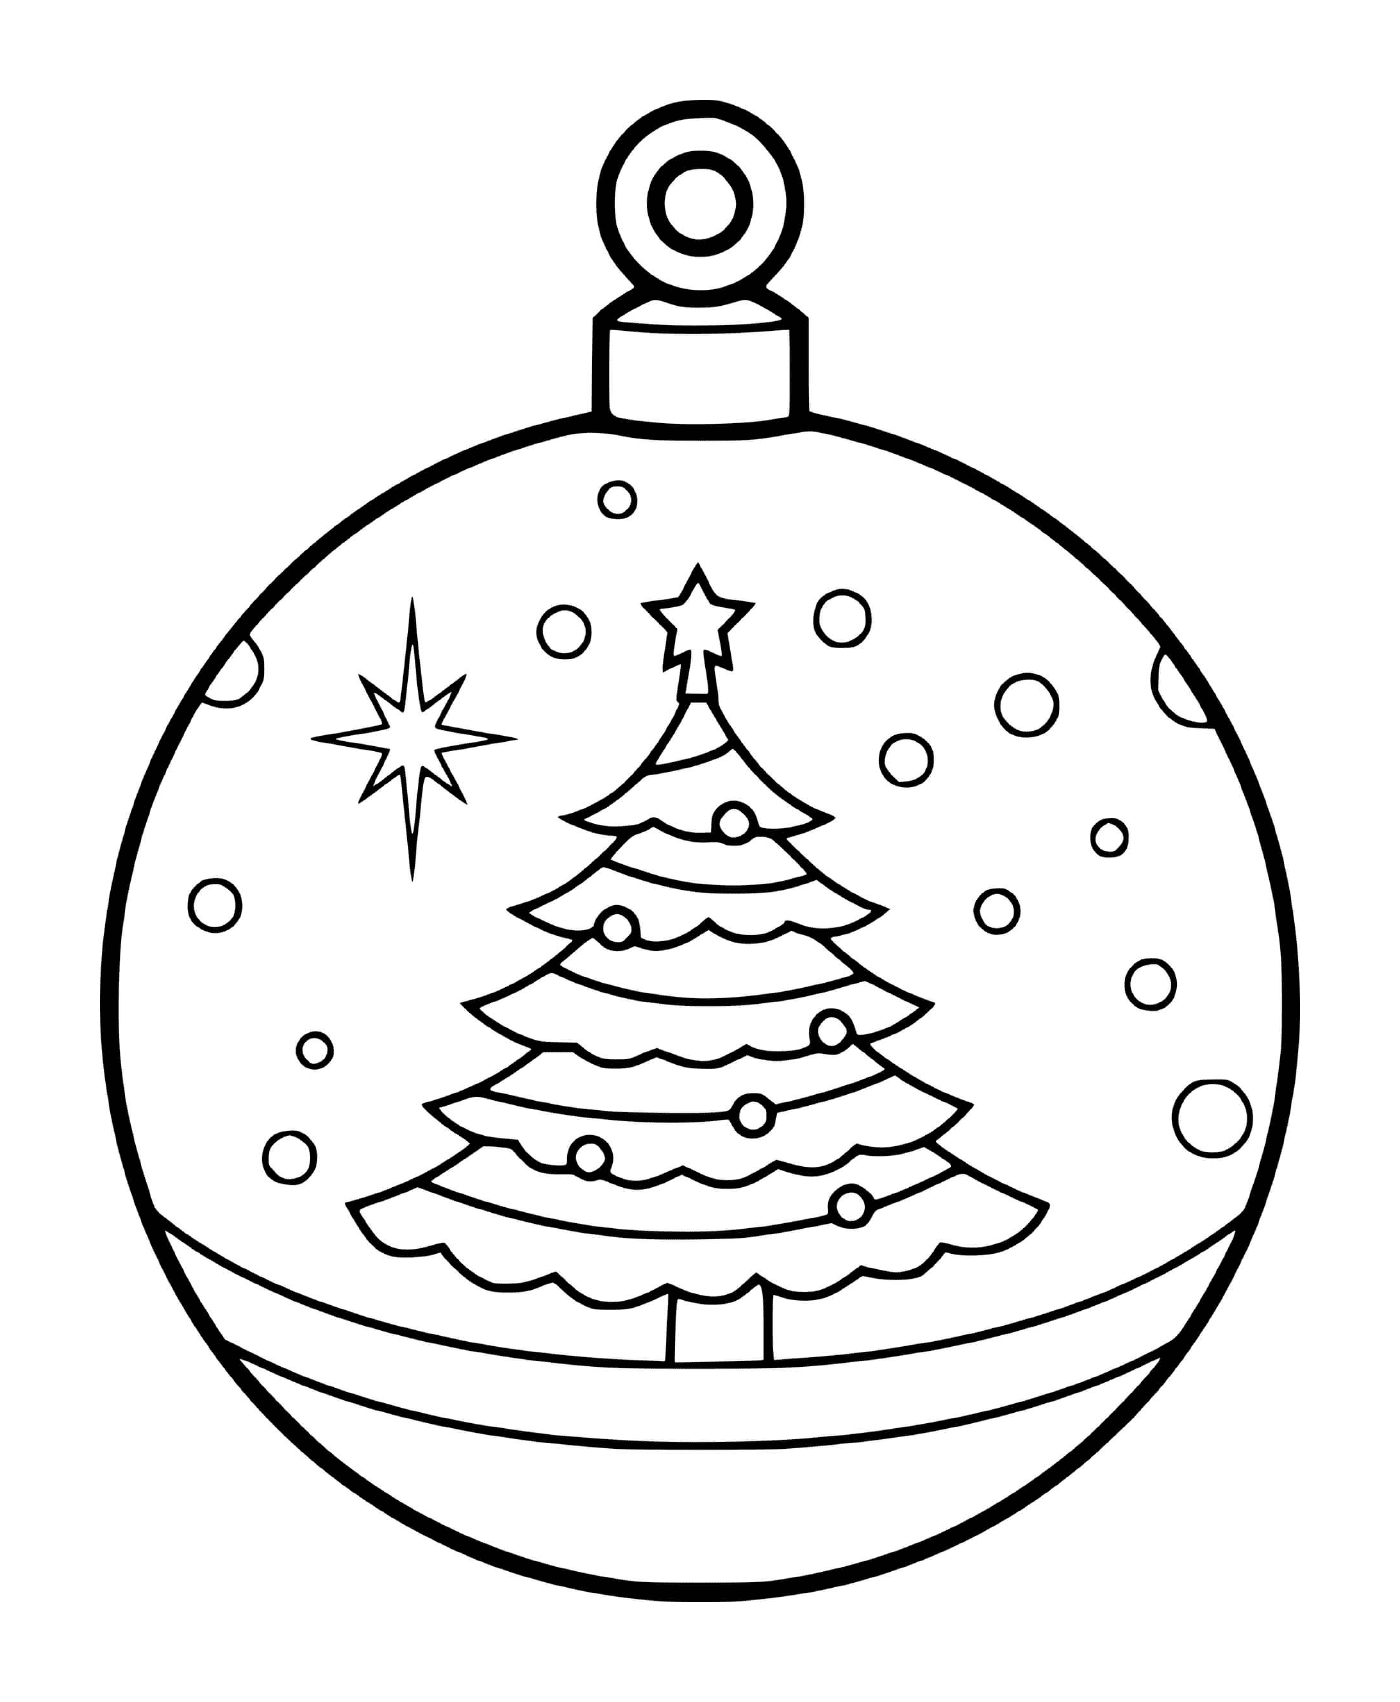  एक क्रिसमस की गेंद पेड़ - भू - दृश्‍य तथा सर्दियों बर्फ के साथ 